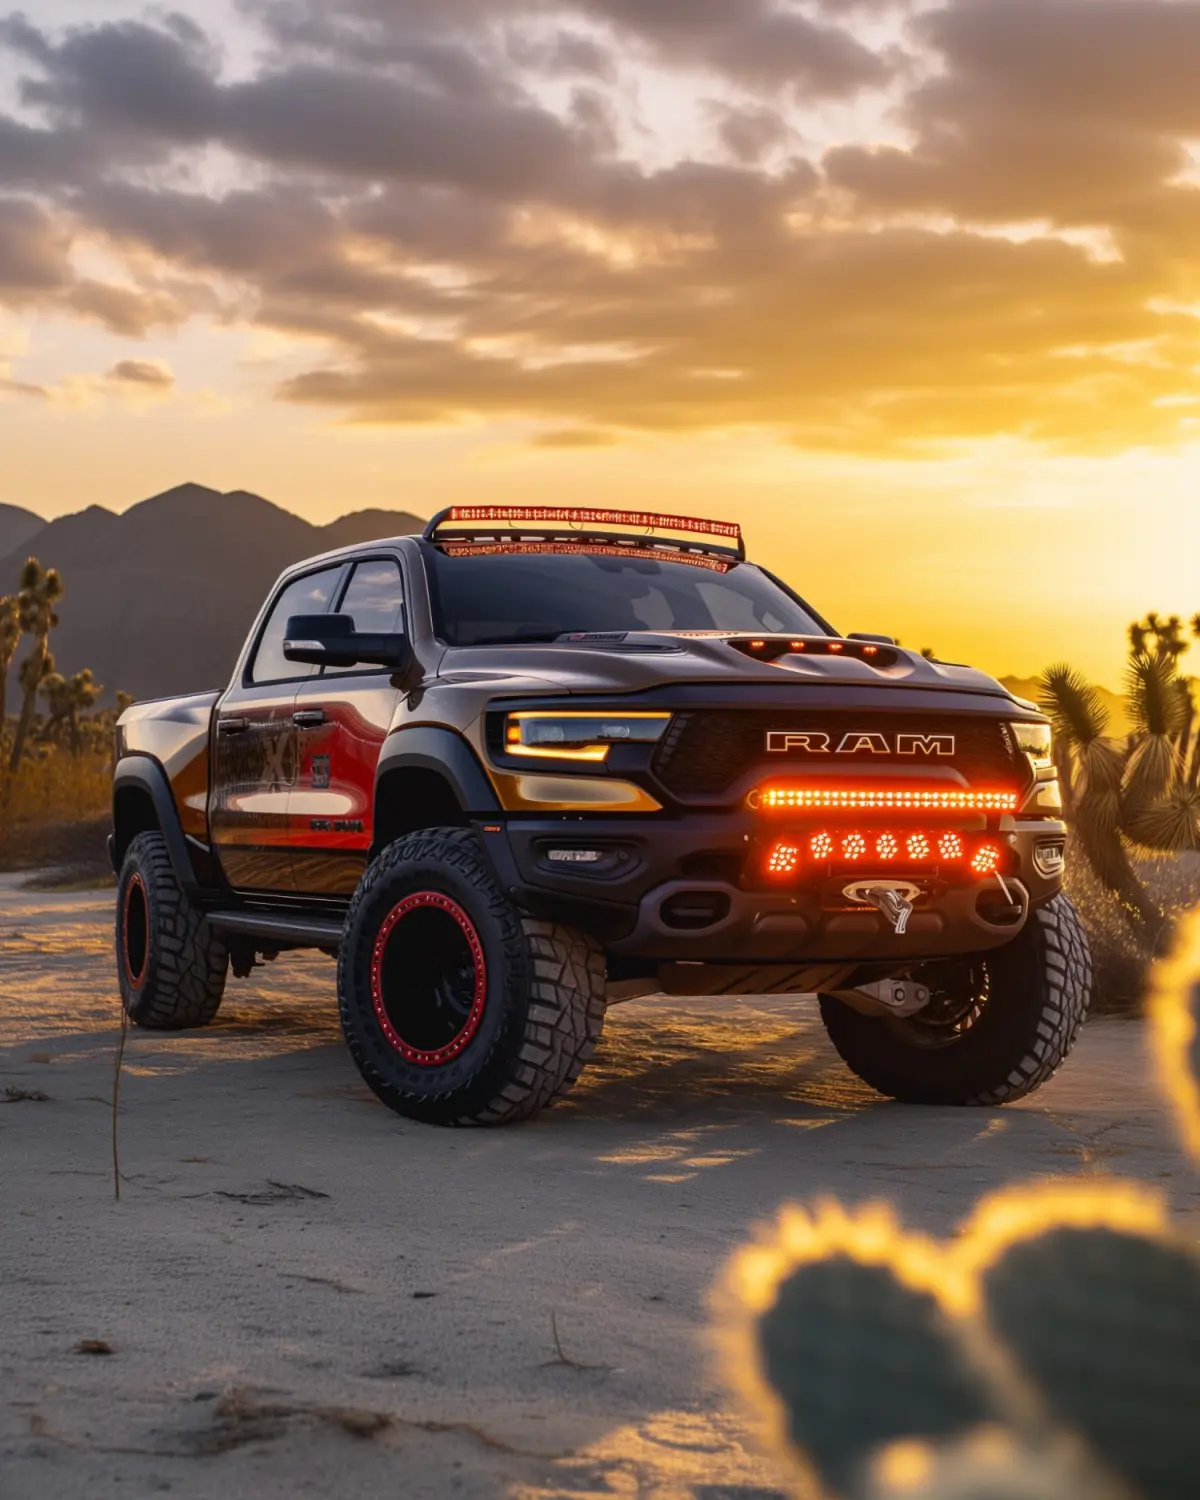 Custom Wrapped Dodge Ram Rebel with lift kit in desert landscape